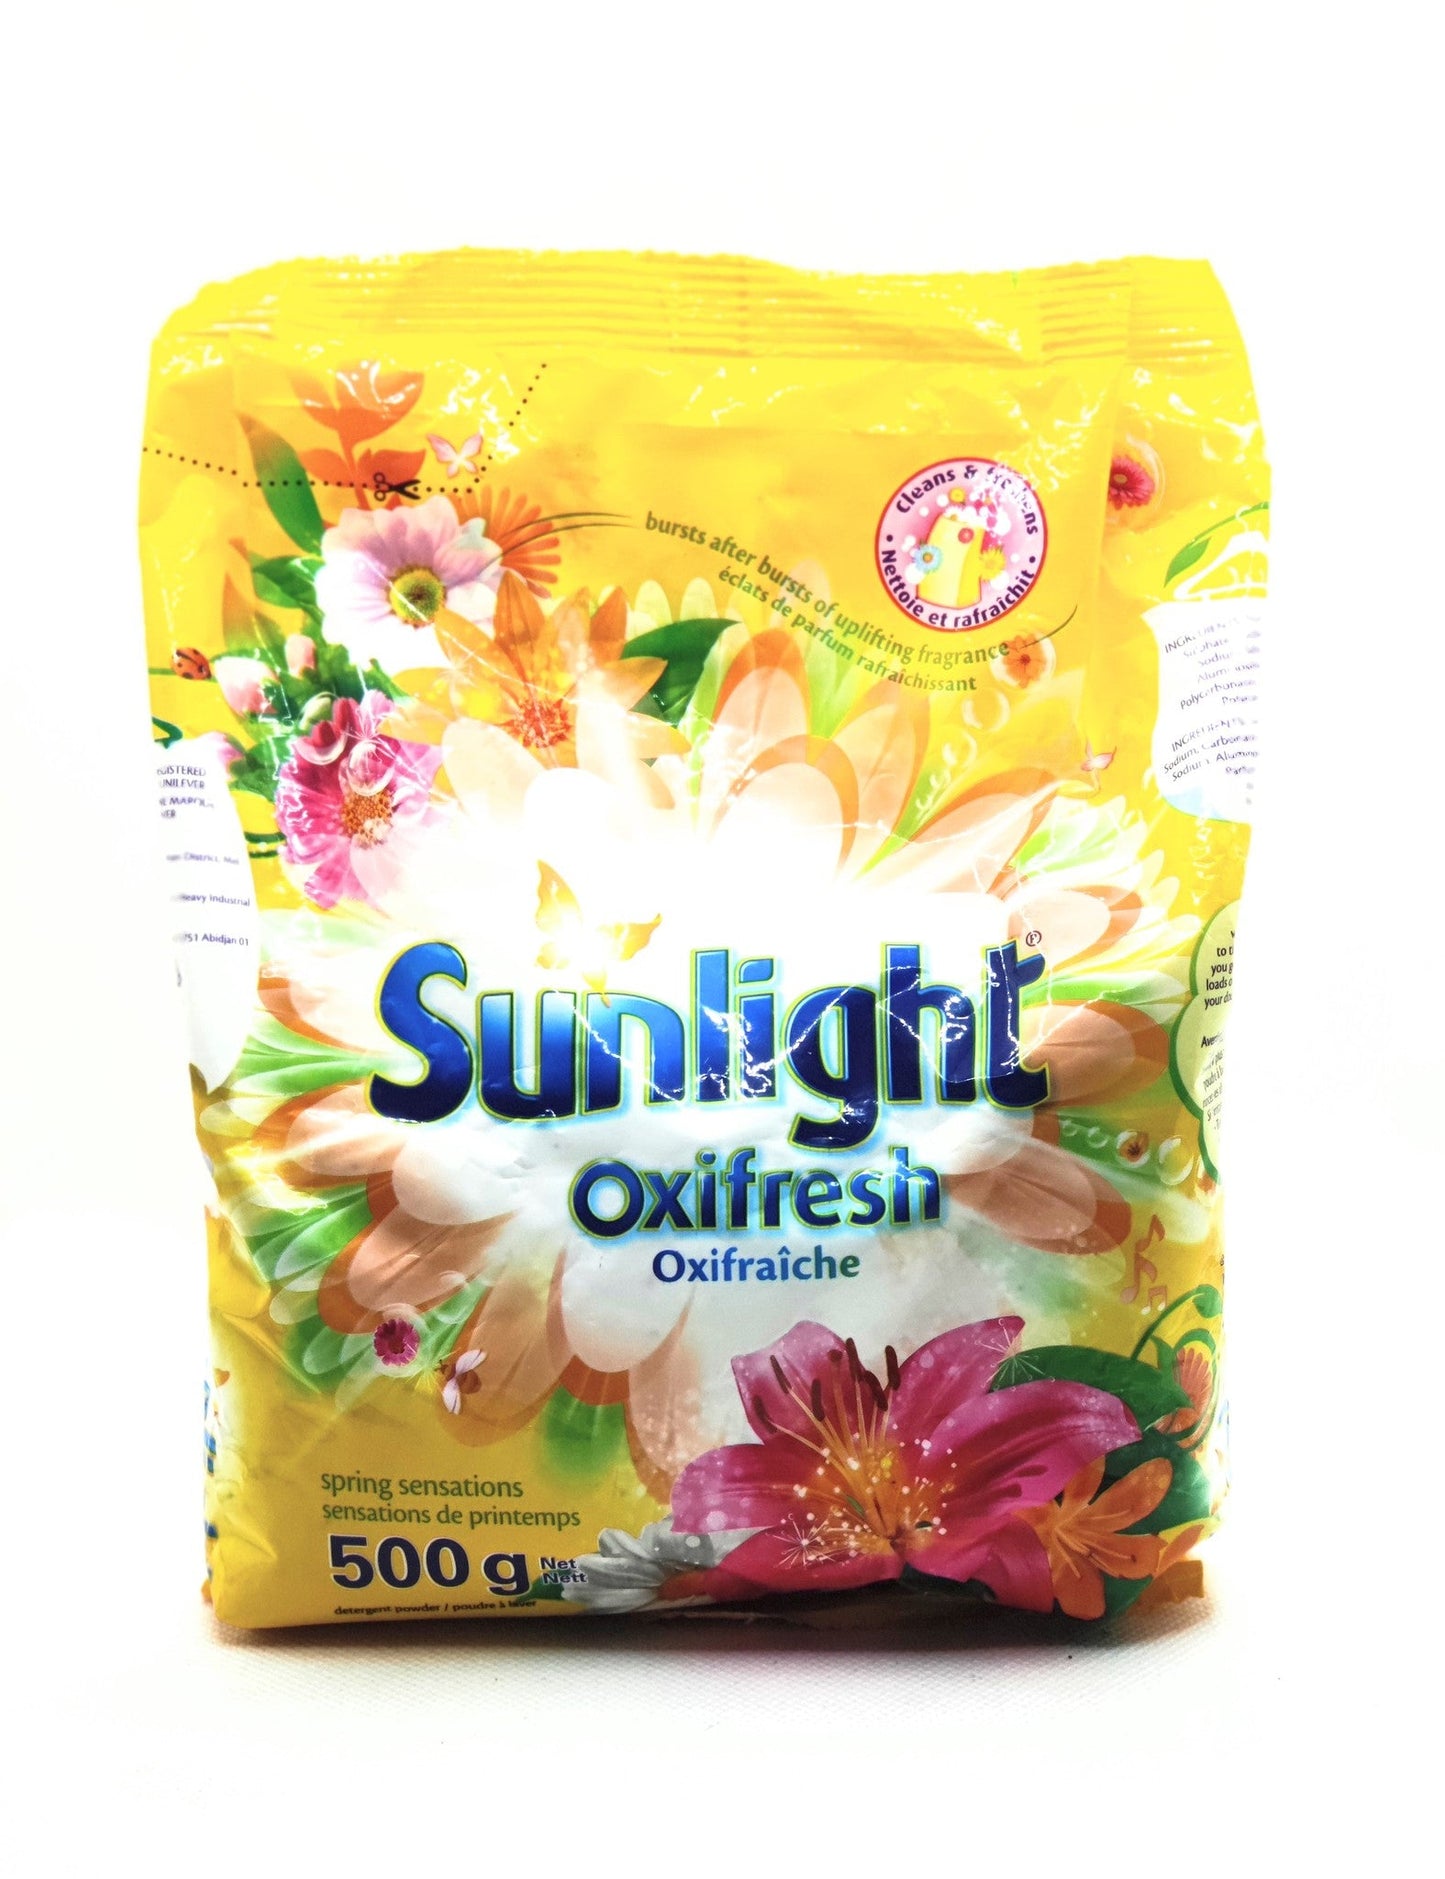 500 gram bag of sunlight oxifresh detergent powder